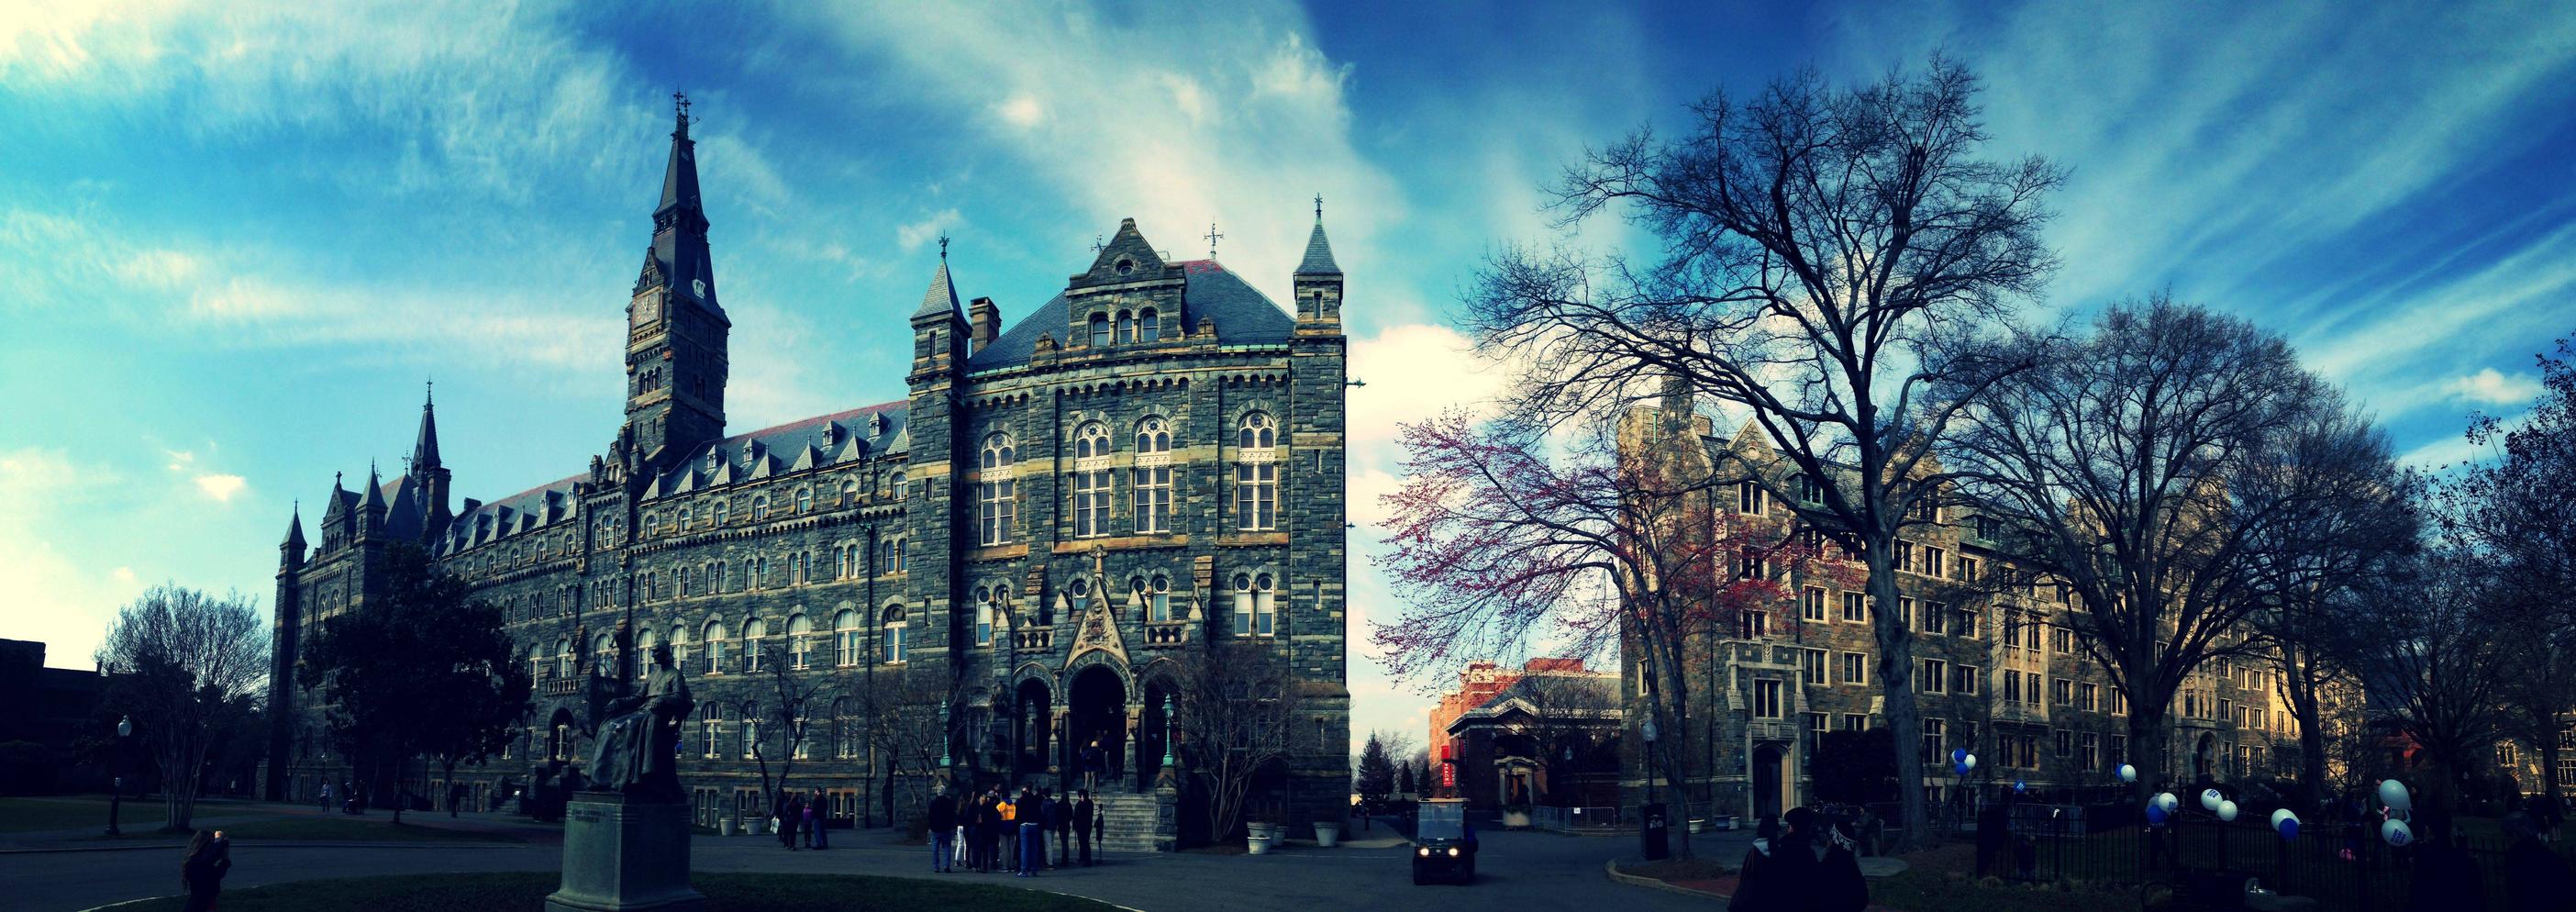 Georgetown University Wallpapers